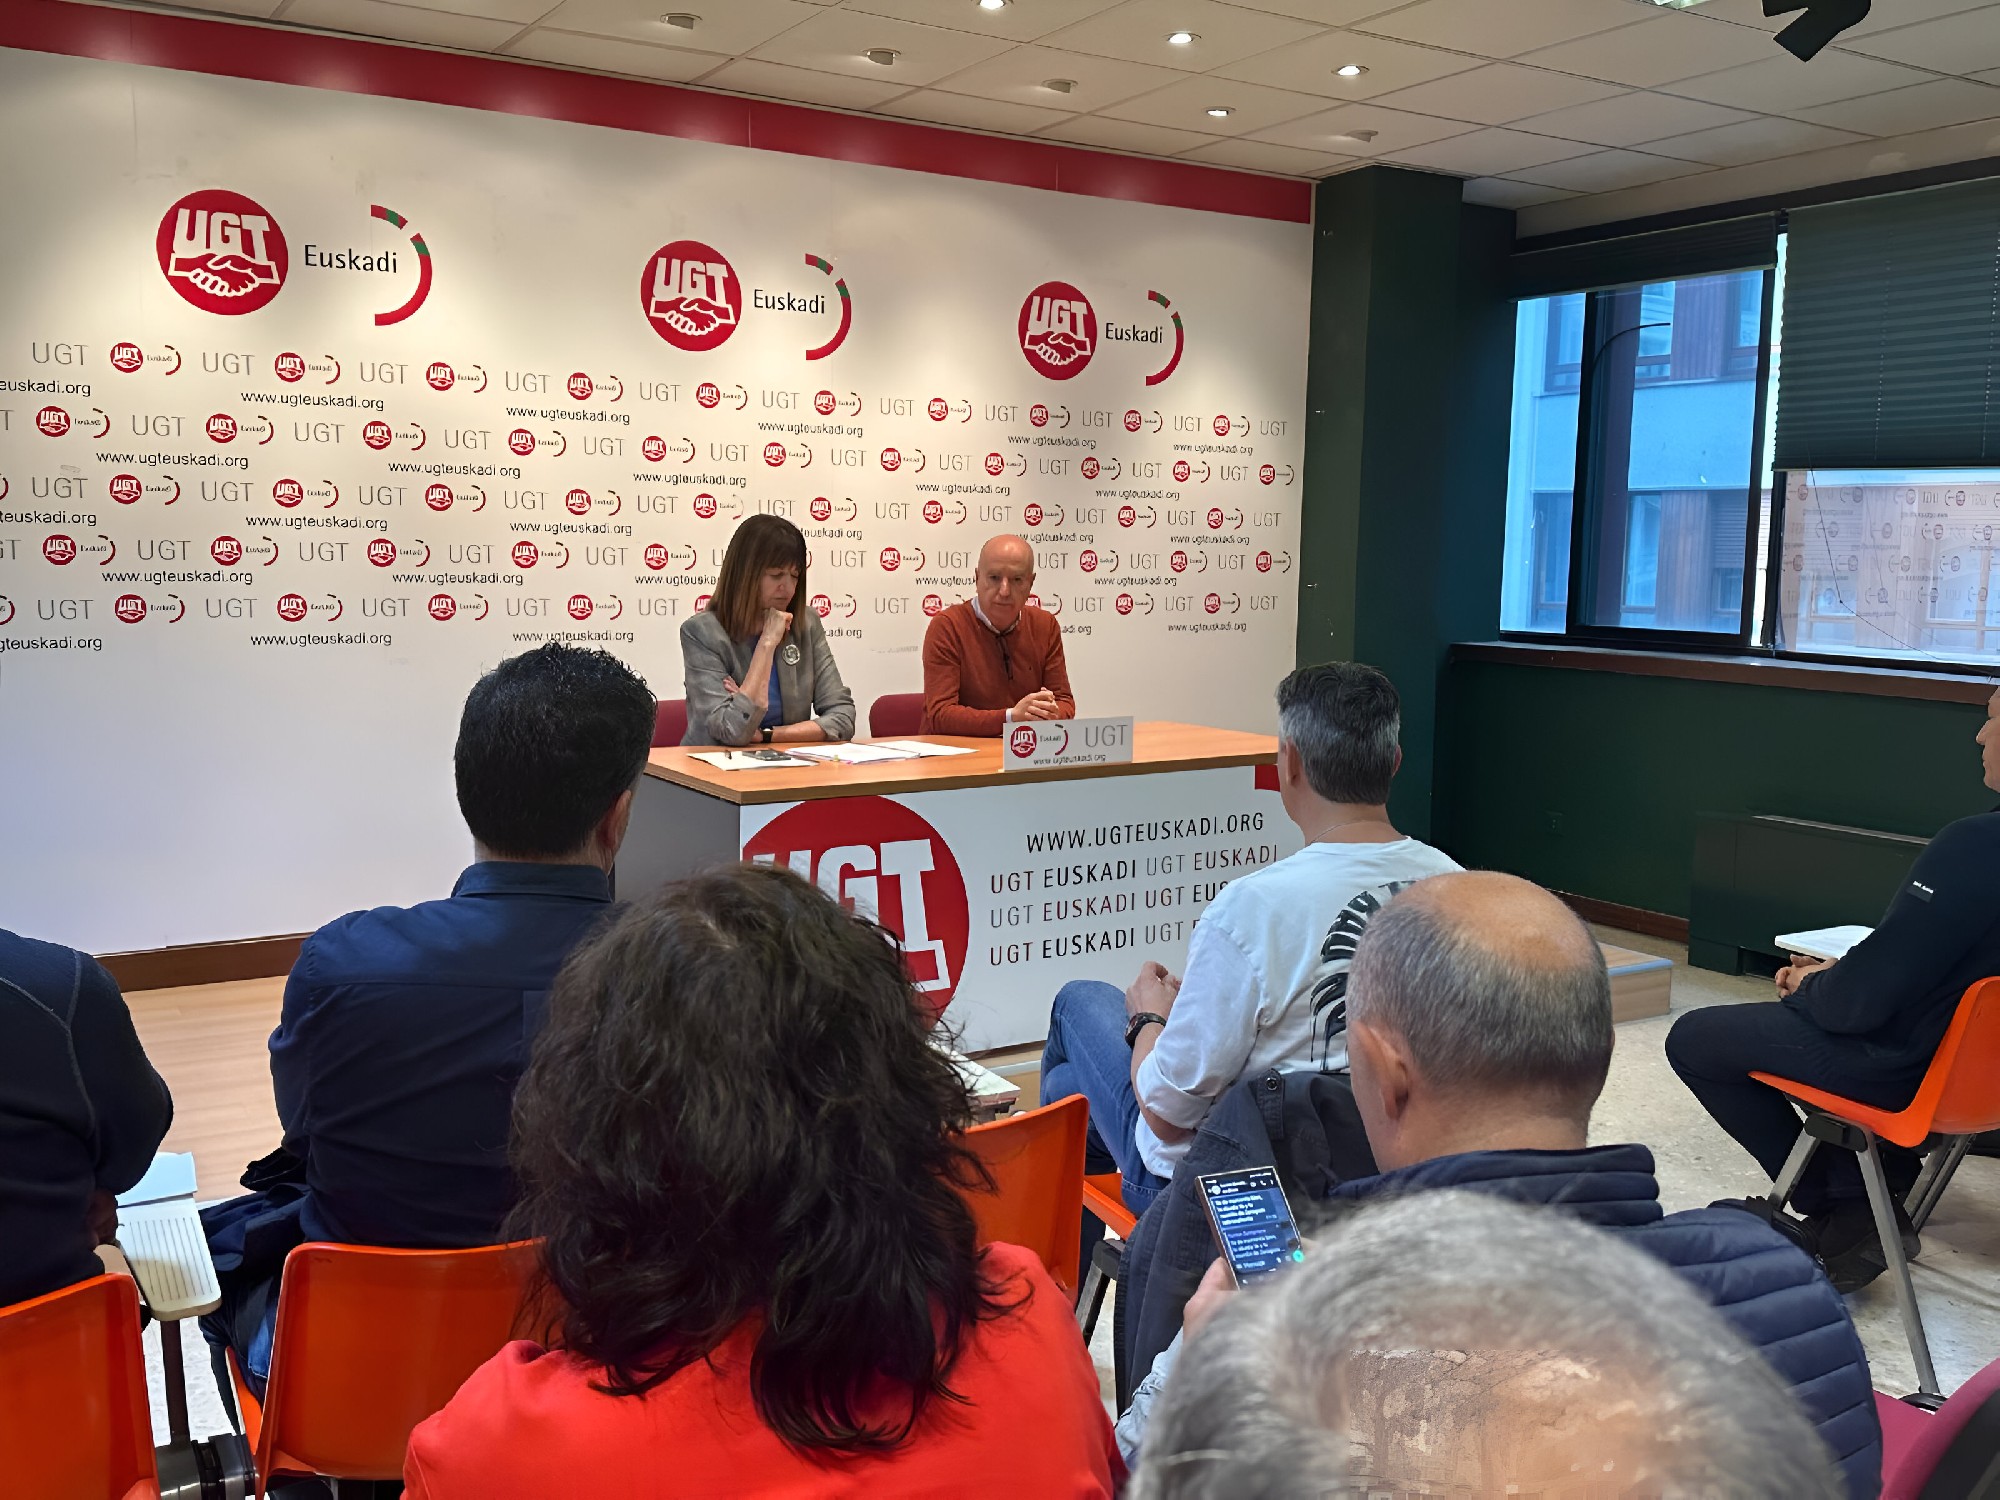 La candidata socialista vasca a las próximas elecciones europeas, Idoia Mendia, durante el encuentro mantenido con delegados sindicales de UGT Euskadi | Foto: Socialistas Vascos